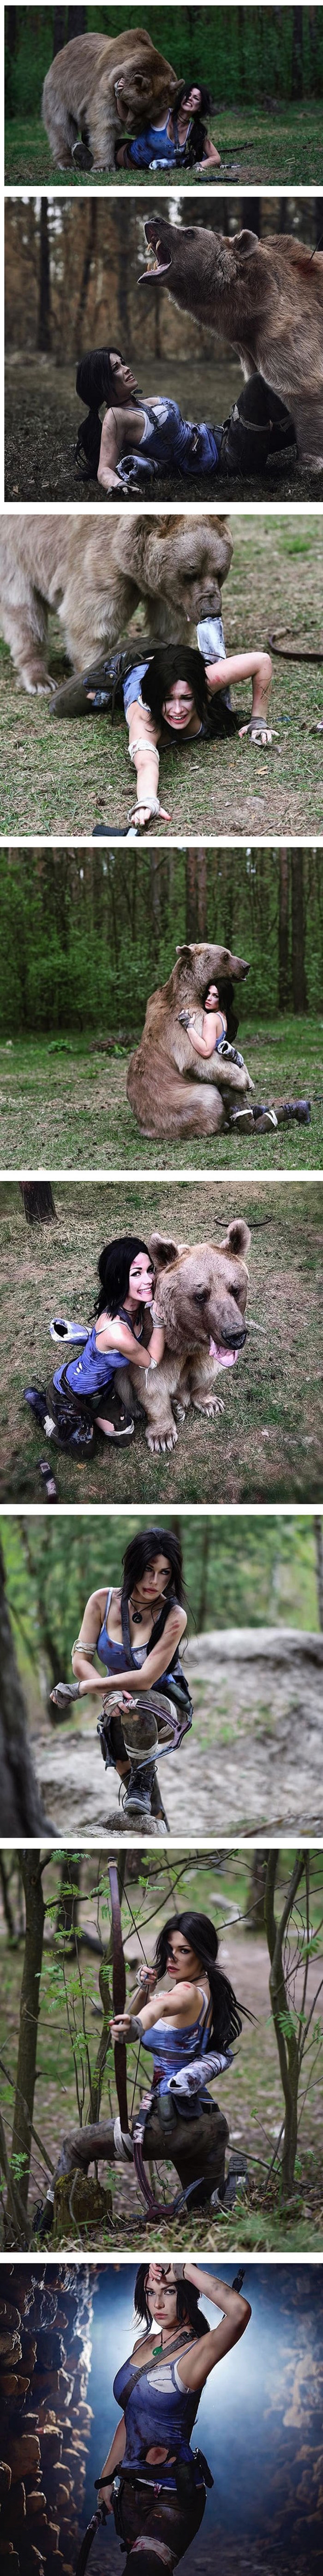 Ova je Ruskinja pozirala s medvjedom za potrebe snimanja